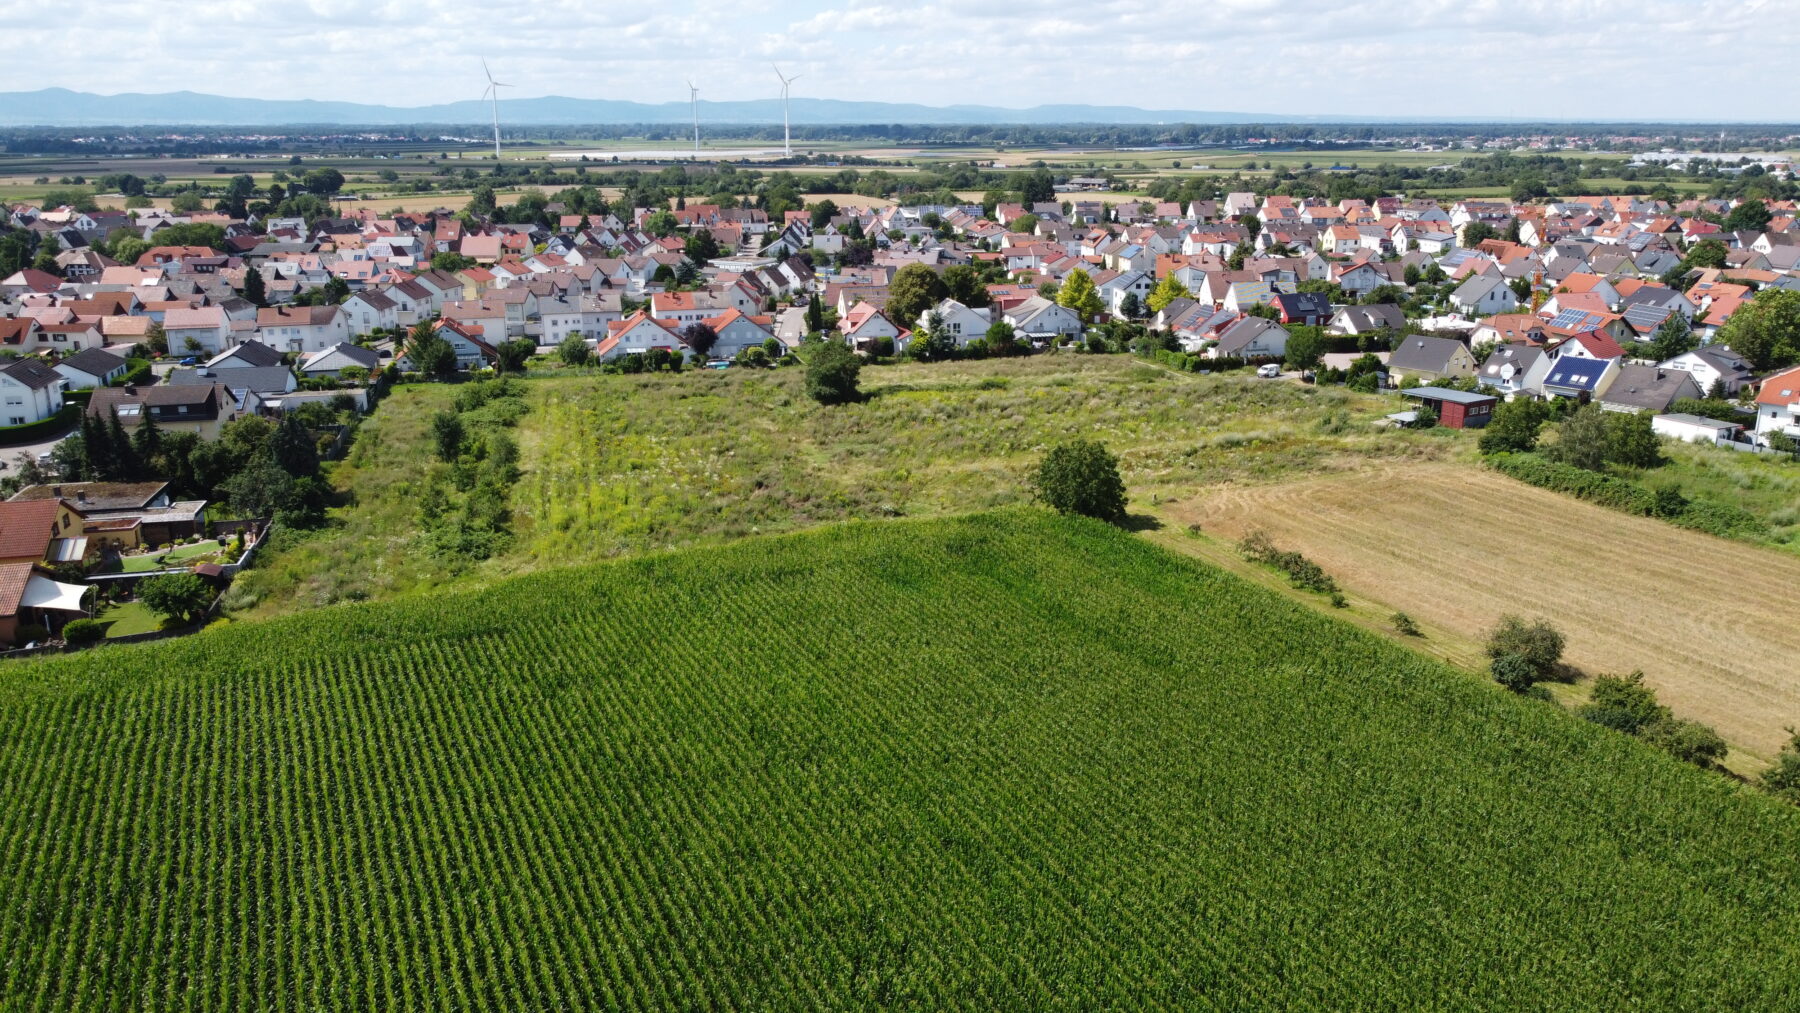 Römerberg “W4 Mittelgewanne” Luftaufnahme